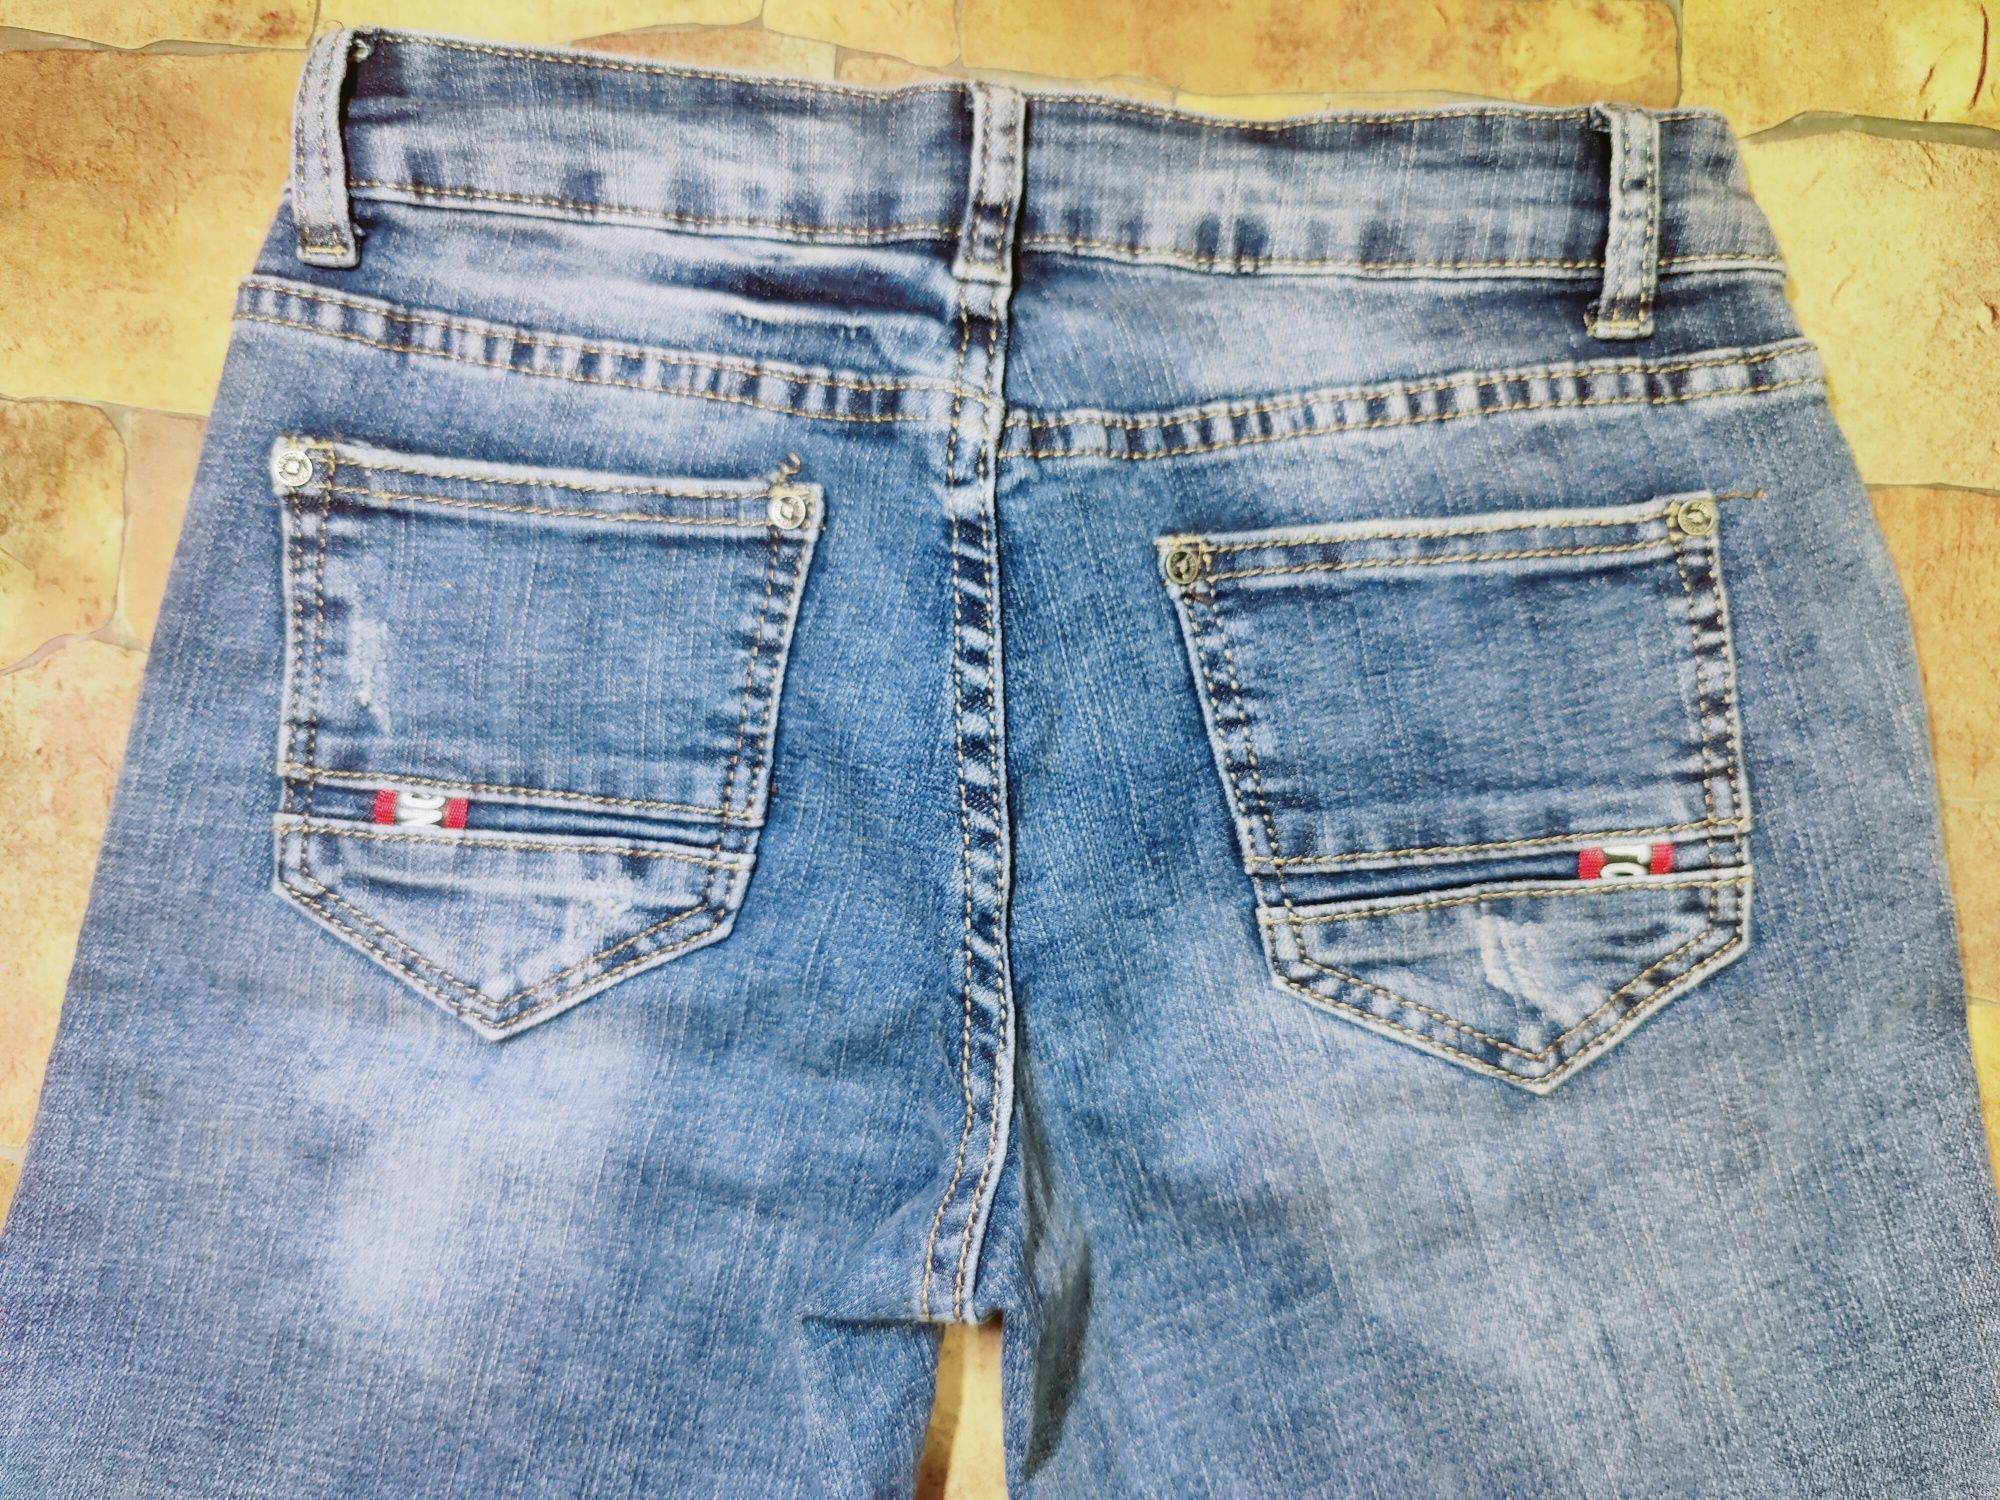 Женские летние джинсовые шорты